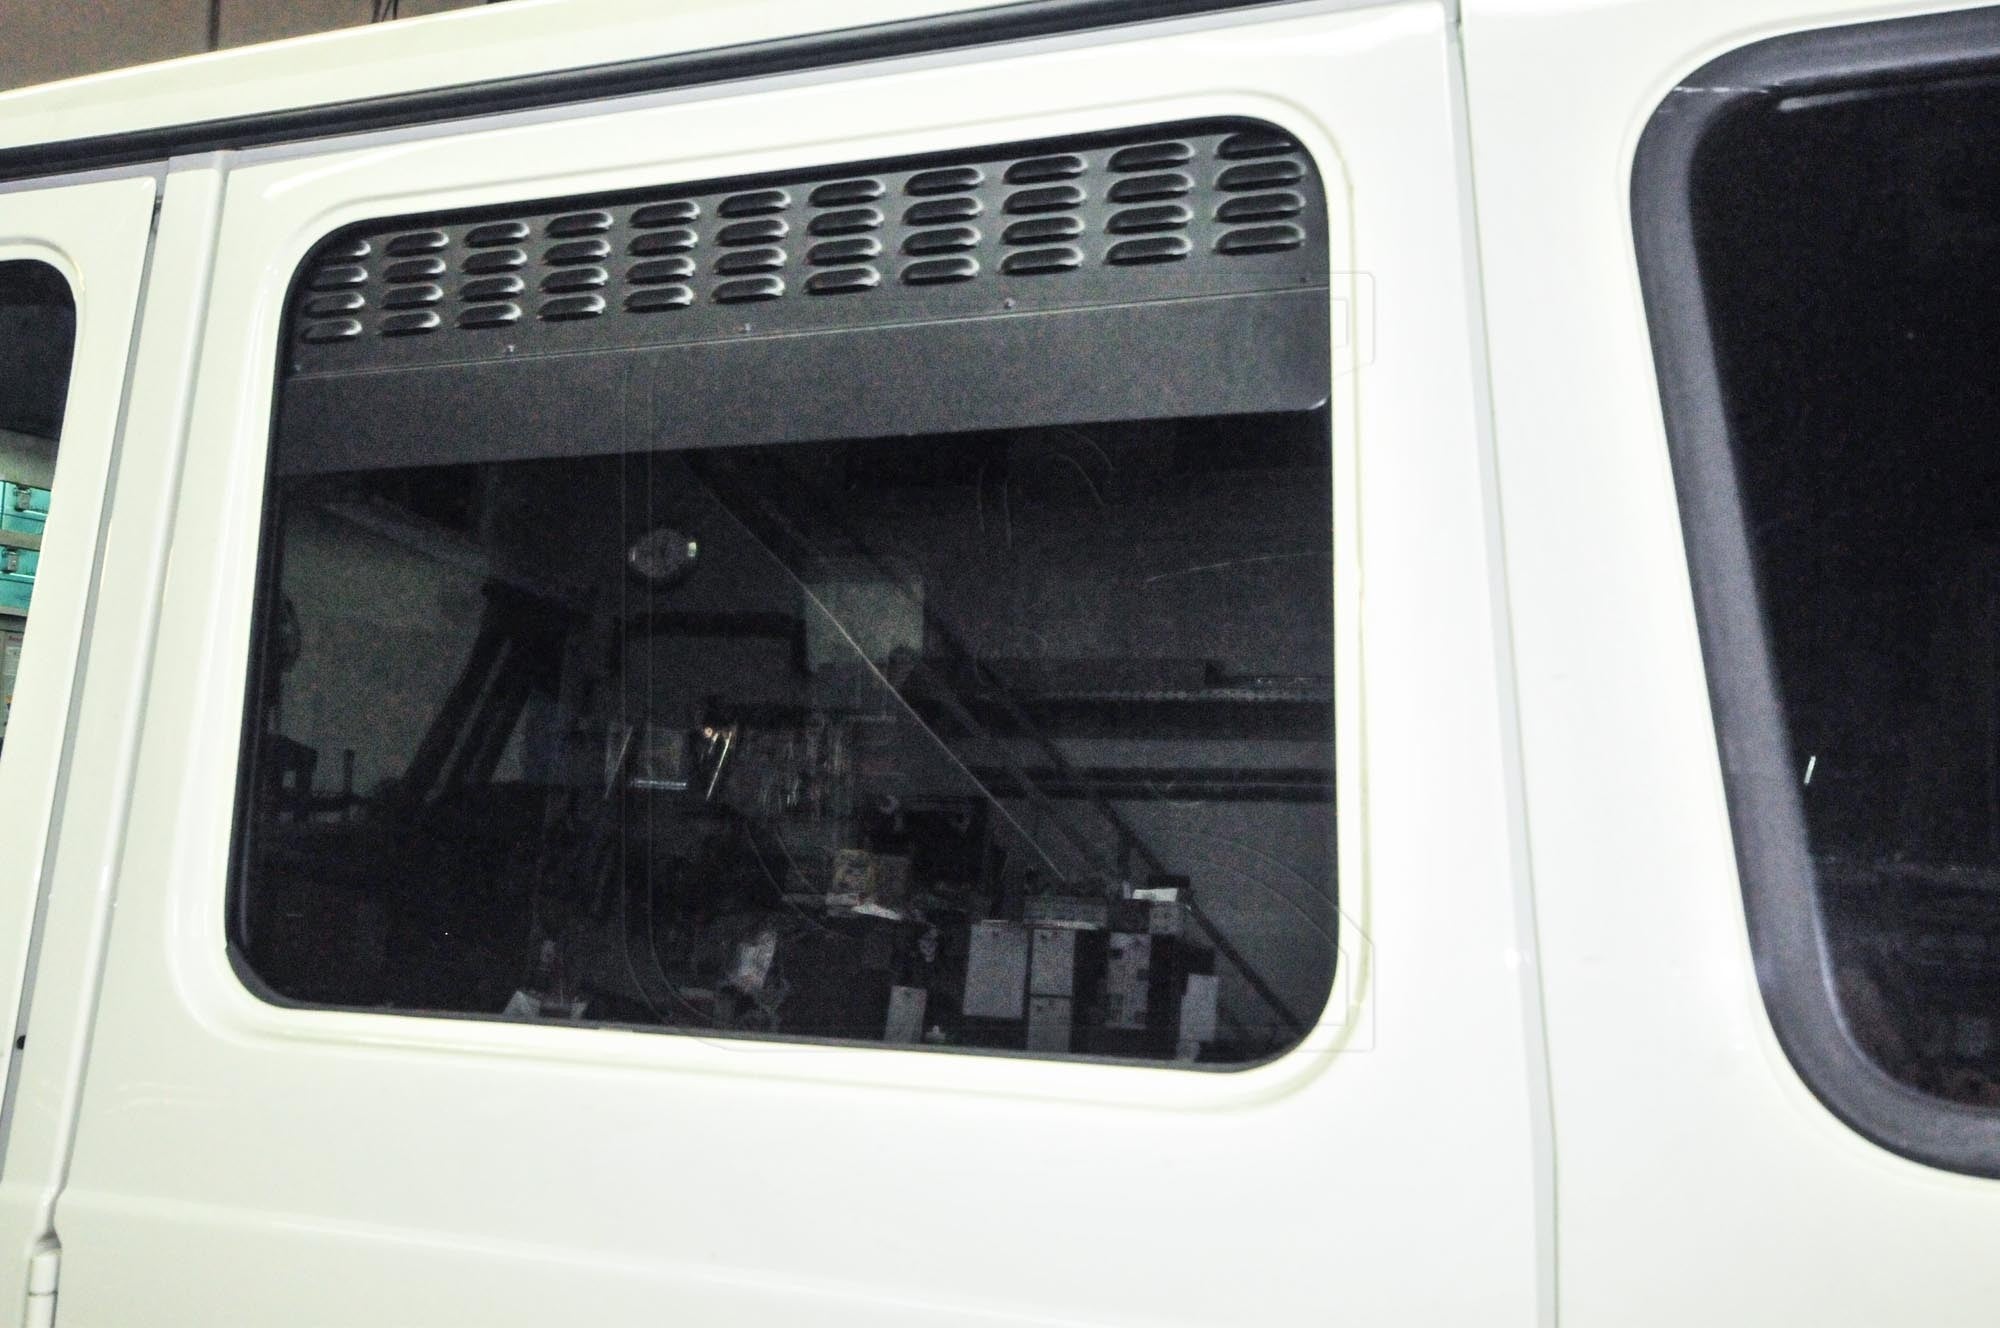 Rear Window Vent Screens - Mercedes G-Class / G-Wagen (set of 2)